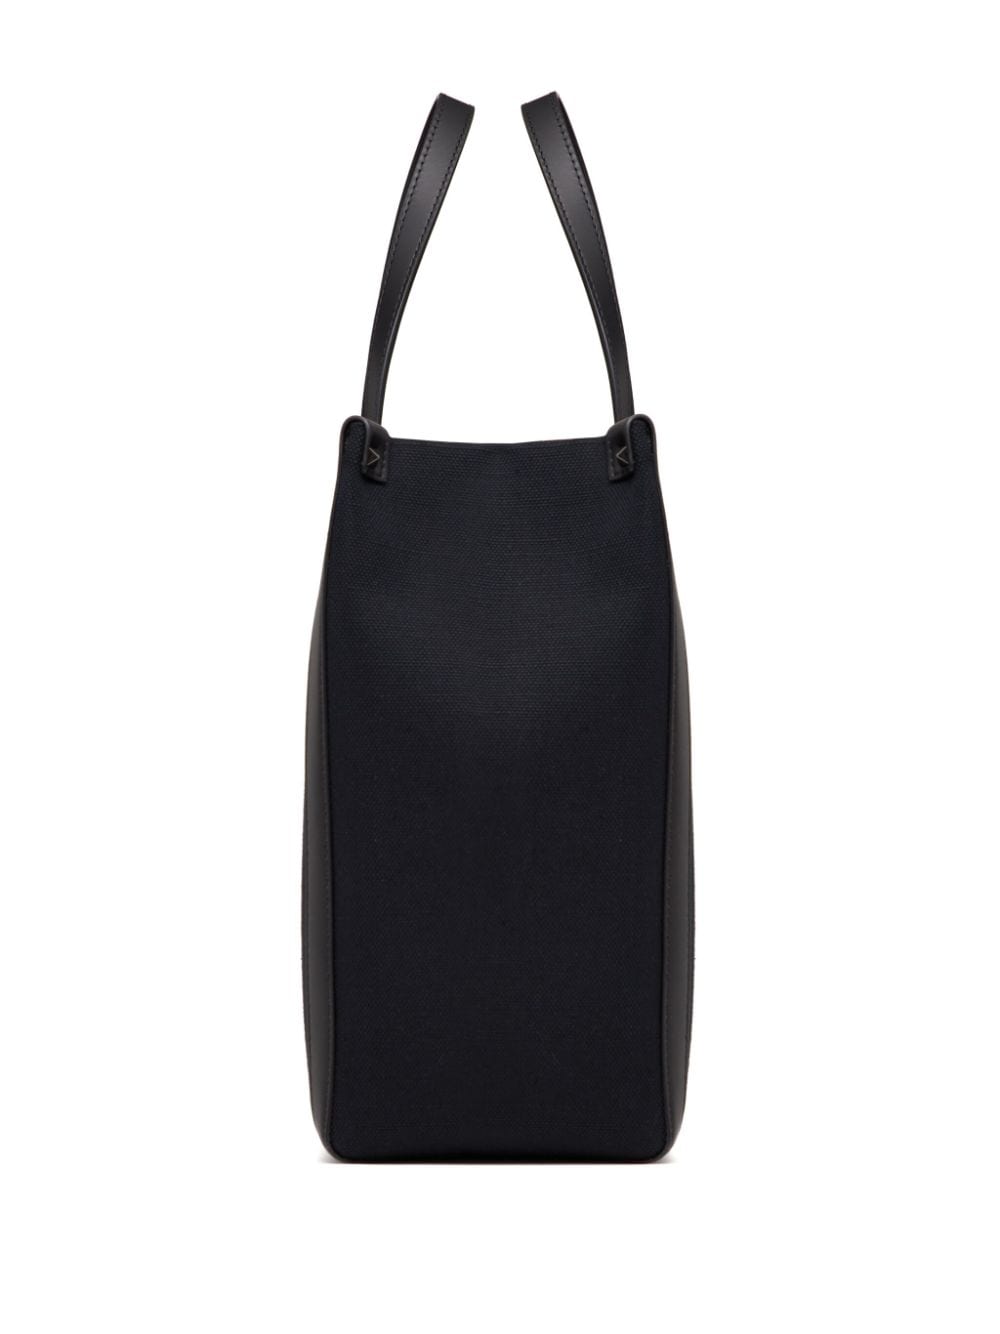 حقيبة يد جلد سوداء متوسطة الحجم مع تزيين روكستد للرجال